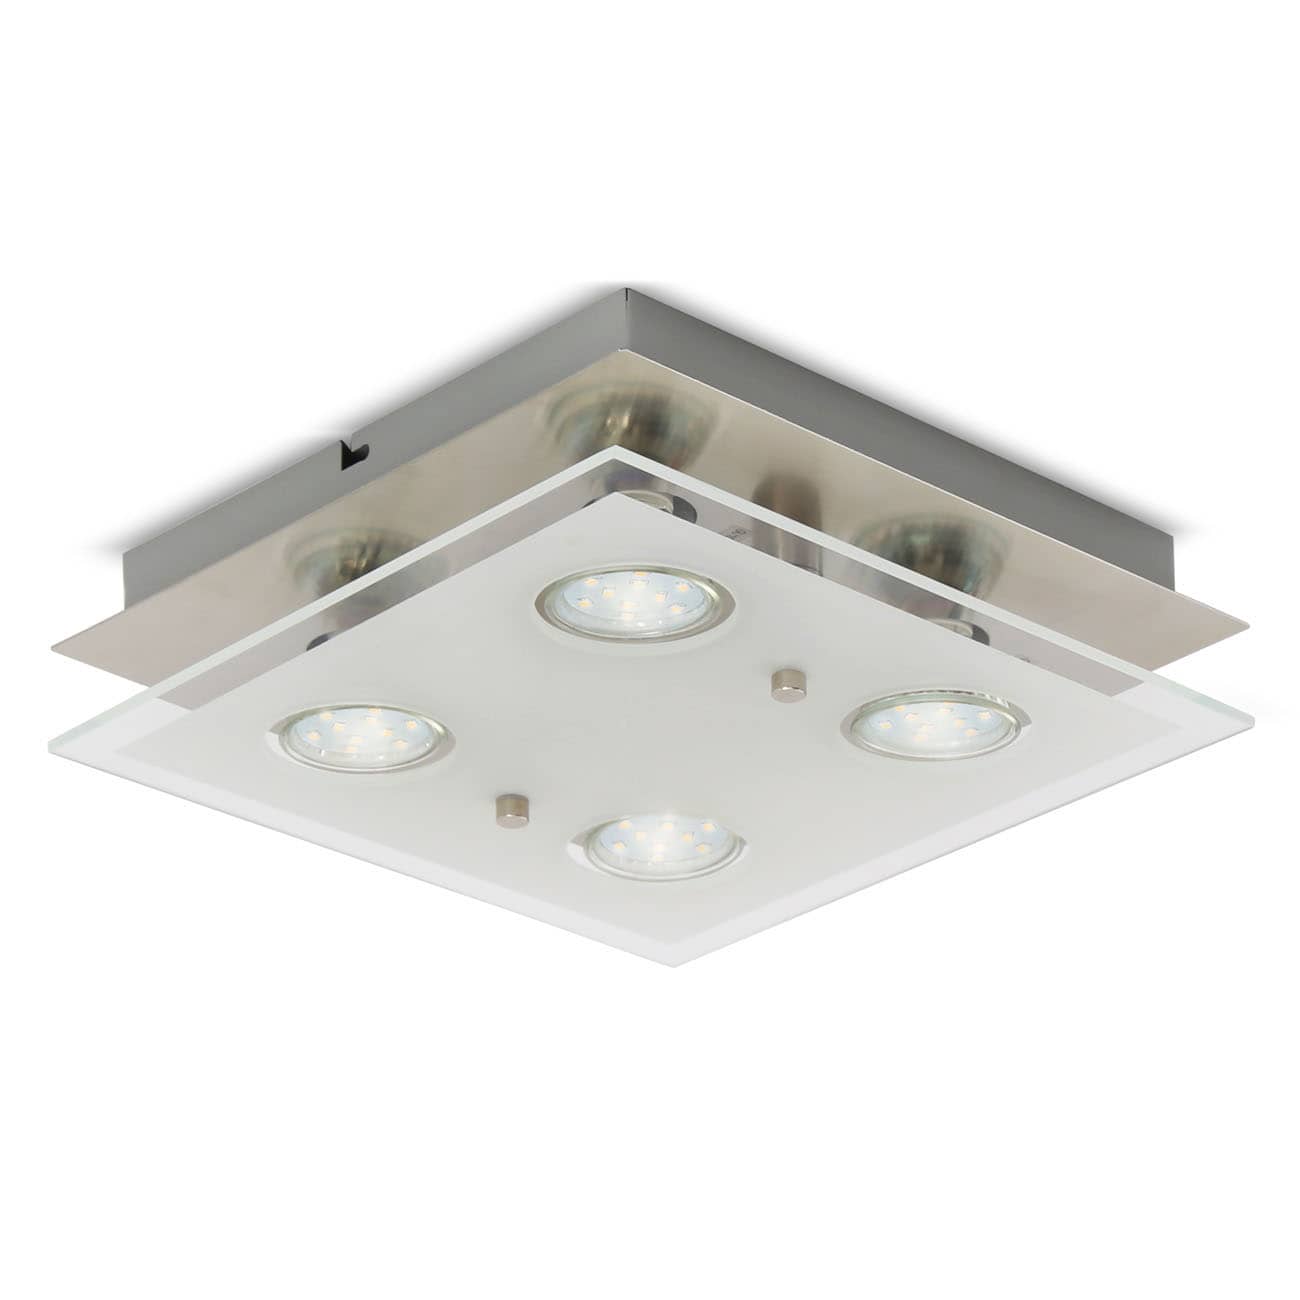 LED Deckenleuchte 25x25cm - 4-flammig - moderne Deckenlampe Glas Metall GU10 12W 1000lm warmweiß | Matt-Nickel - 1